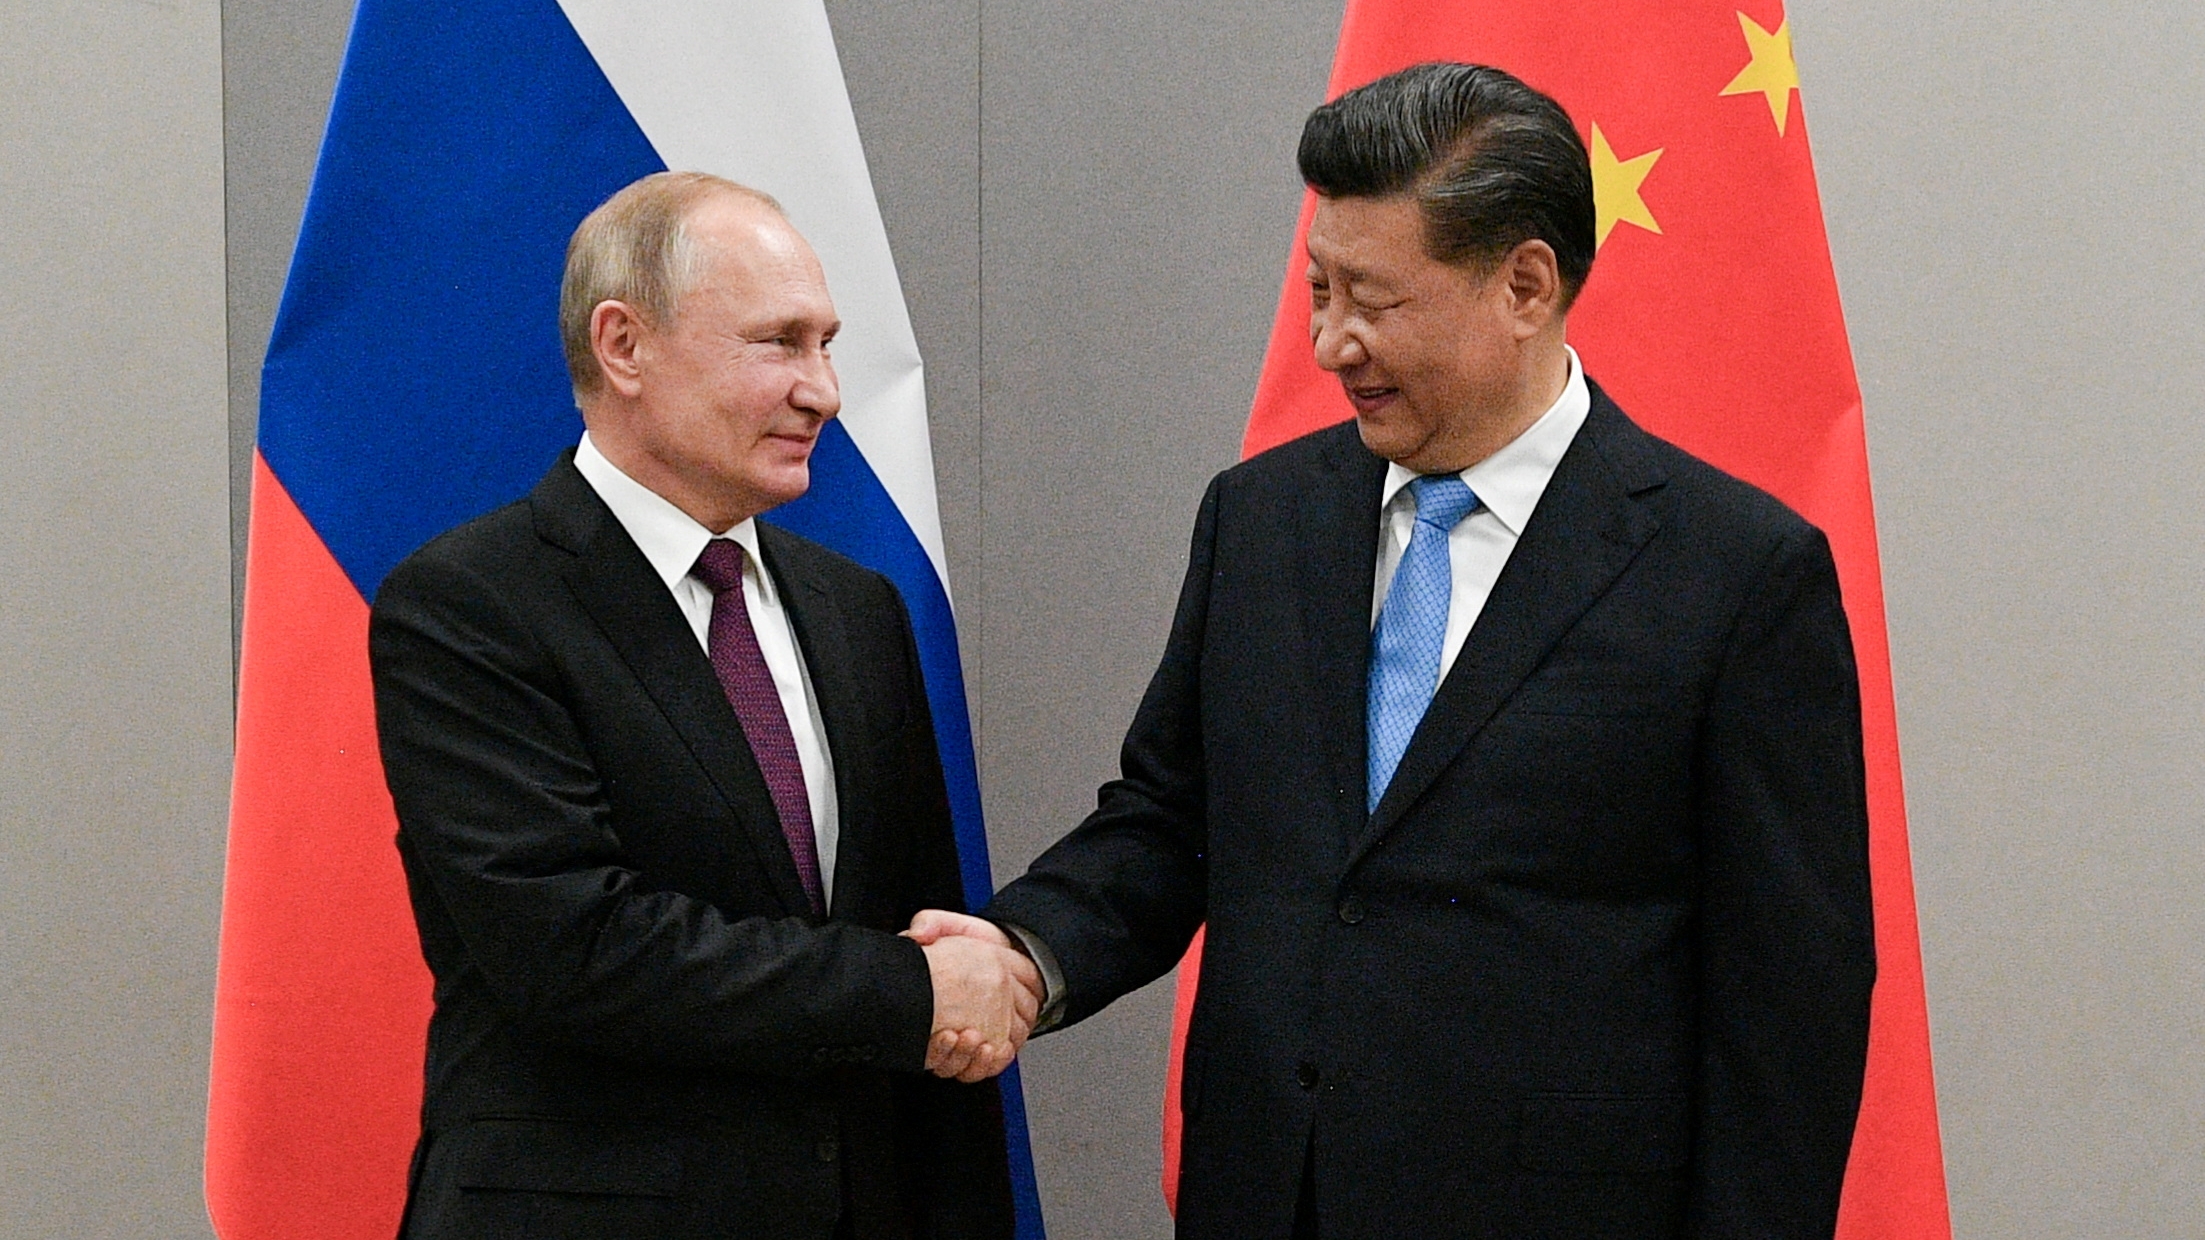 Vladimir Putin le da la mano a Xi Jinping durante una reunión. Sputnik/Ramil Sitdikov/Kremlin vía REUTERS ATENCIÓN EDITORES: ESTA IMAGEN FUE PROPORCIONADA POR UN TERCERO/Foto de archivo